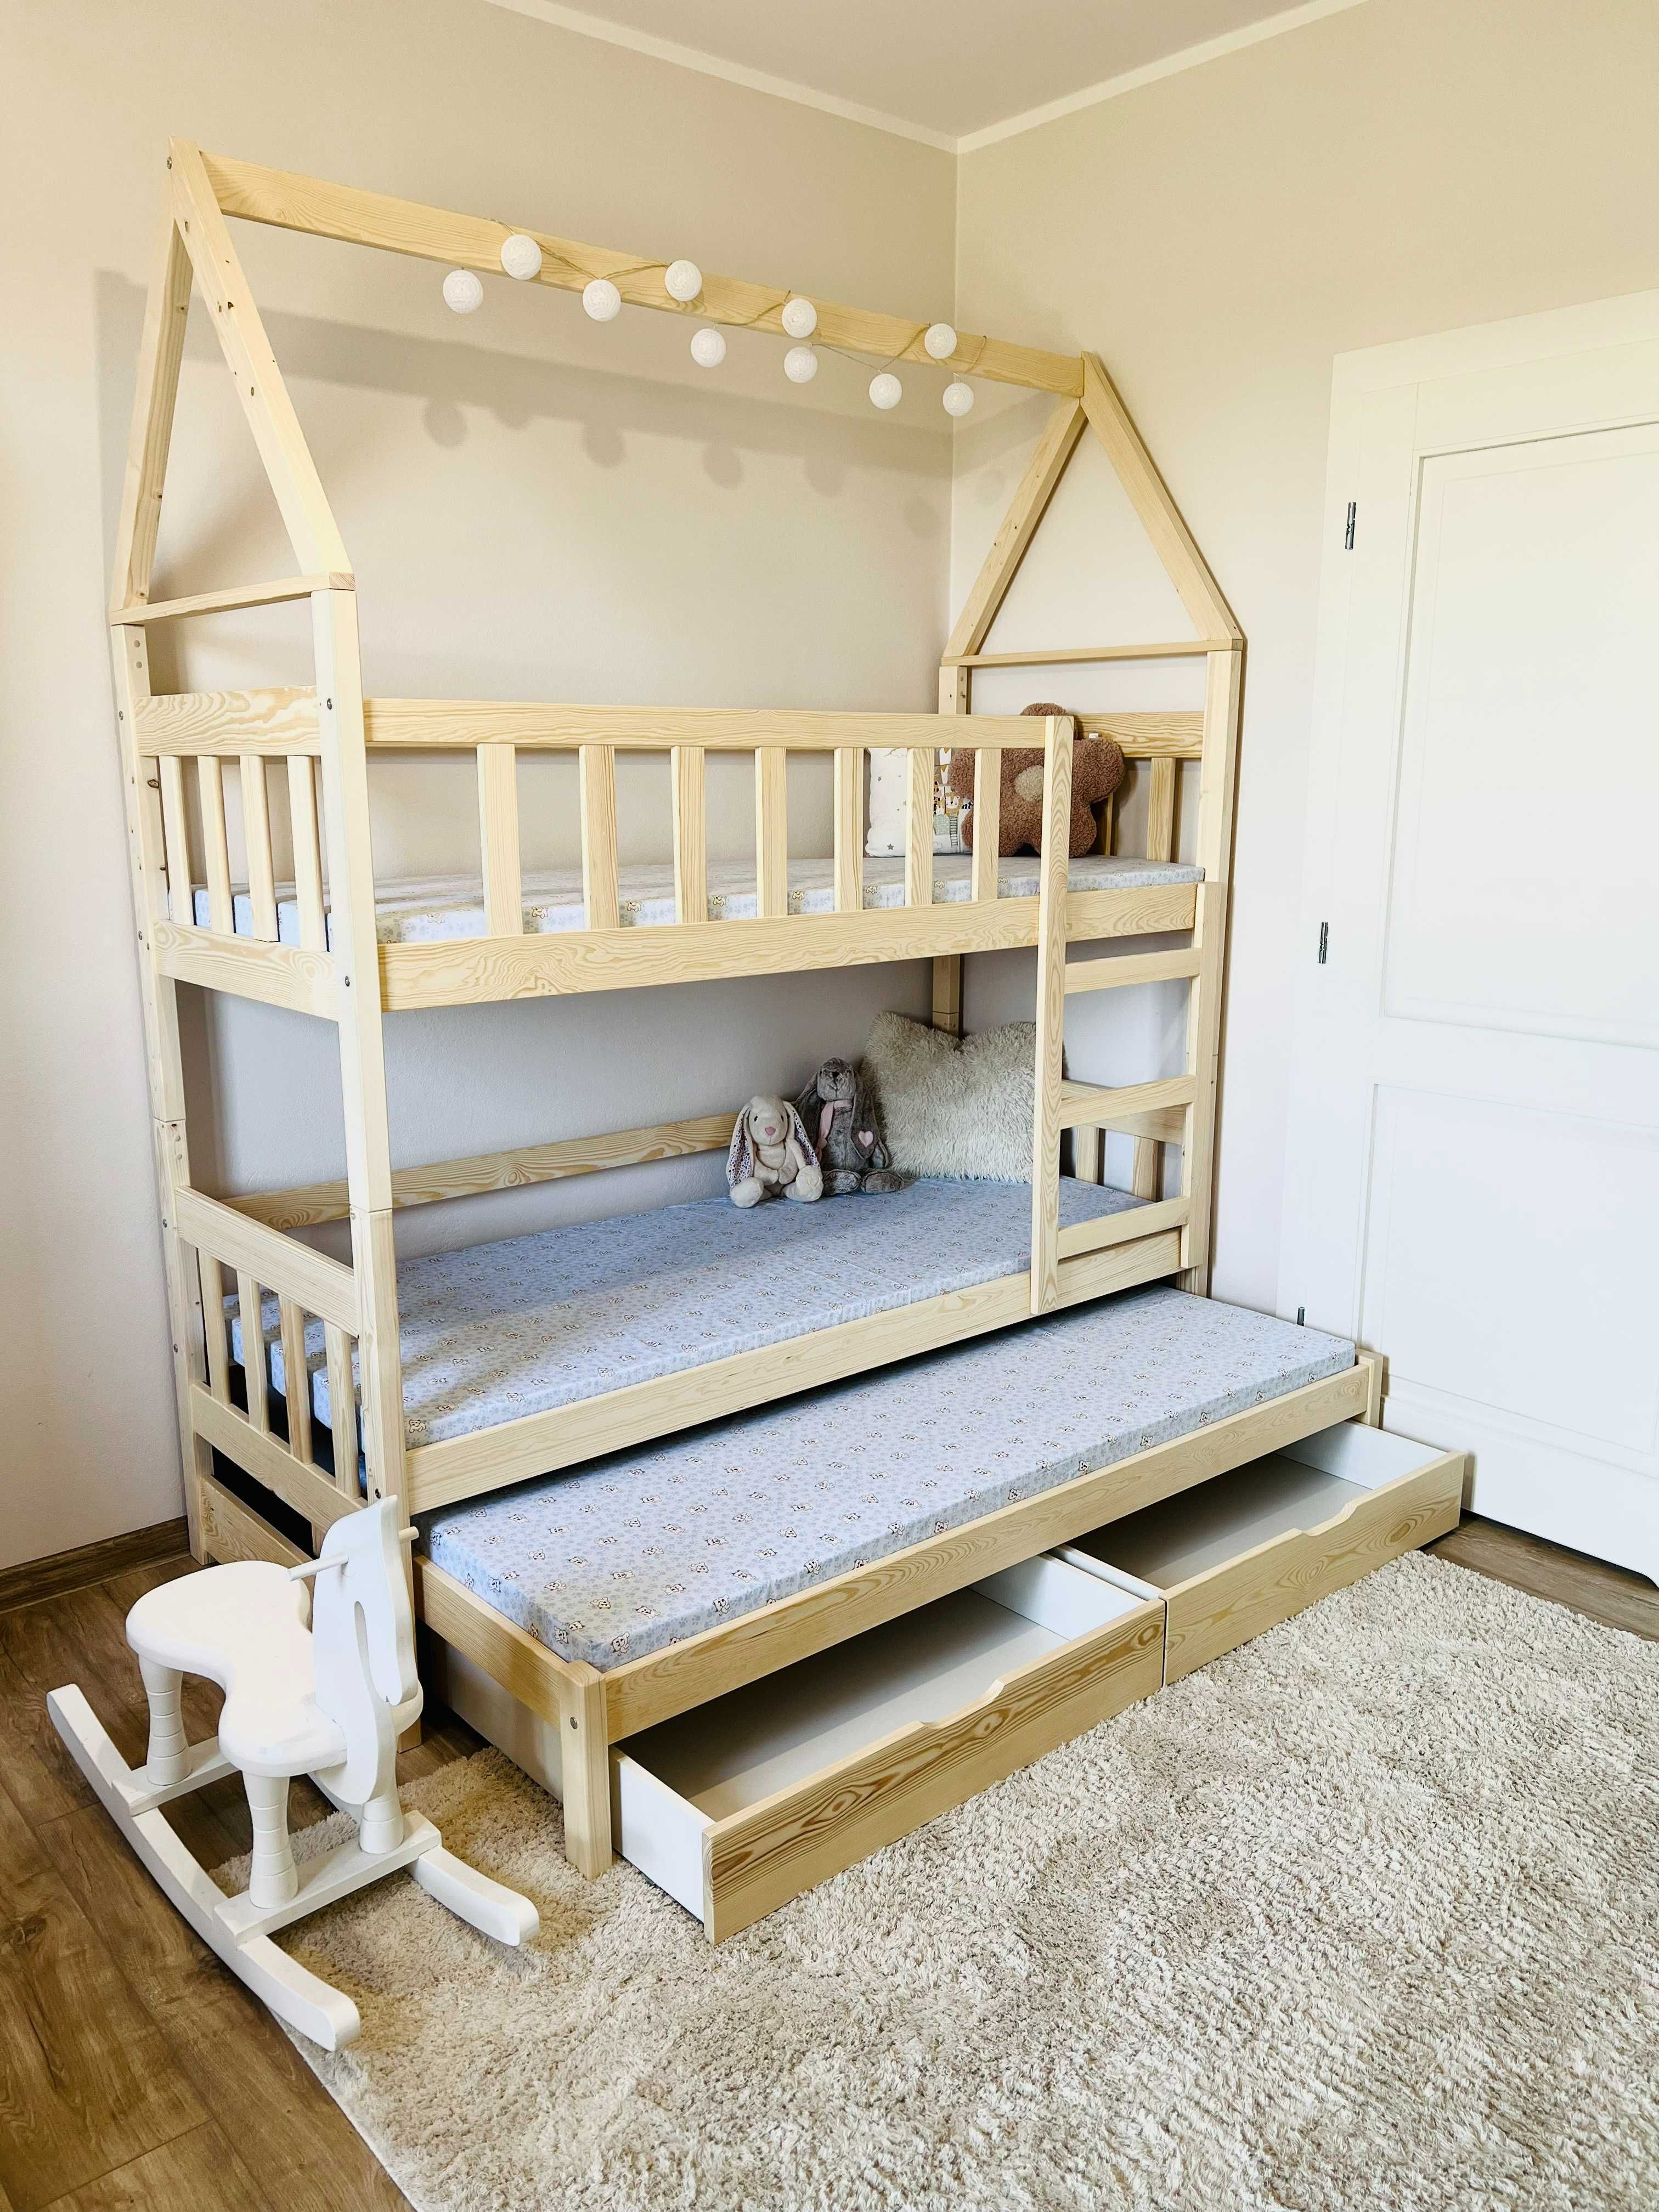 Łóżko piętrowe DOMEK dziecięce 3 osobowe, materace 160x75 lub 180x75